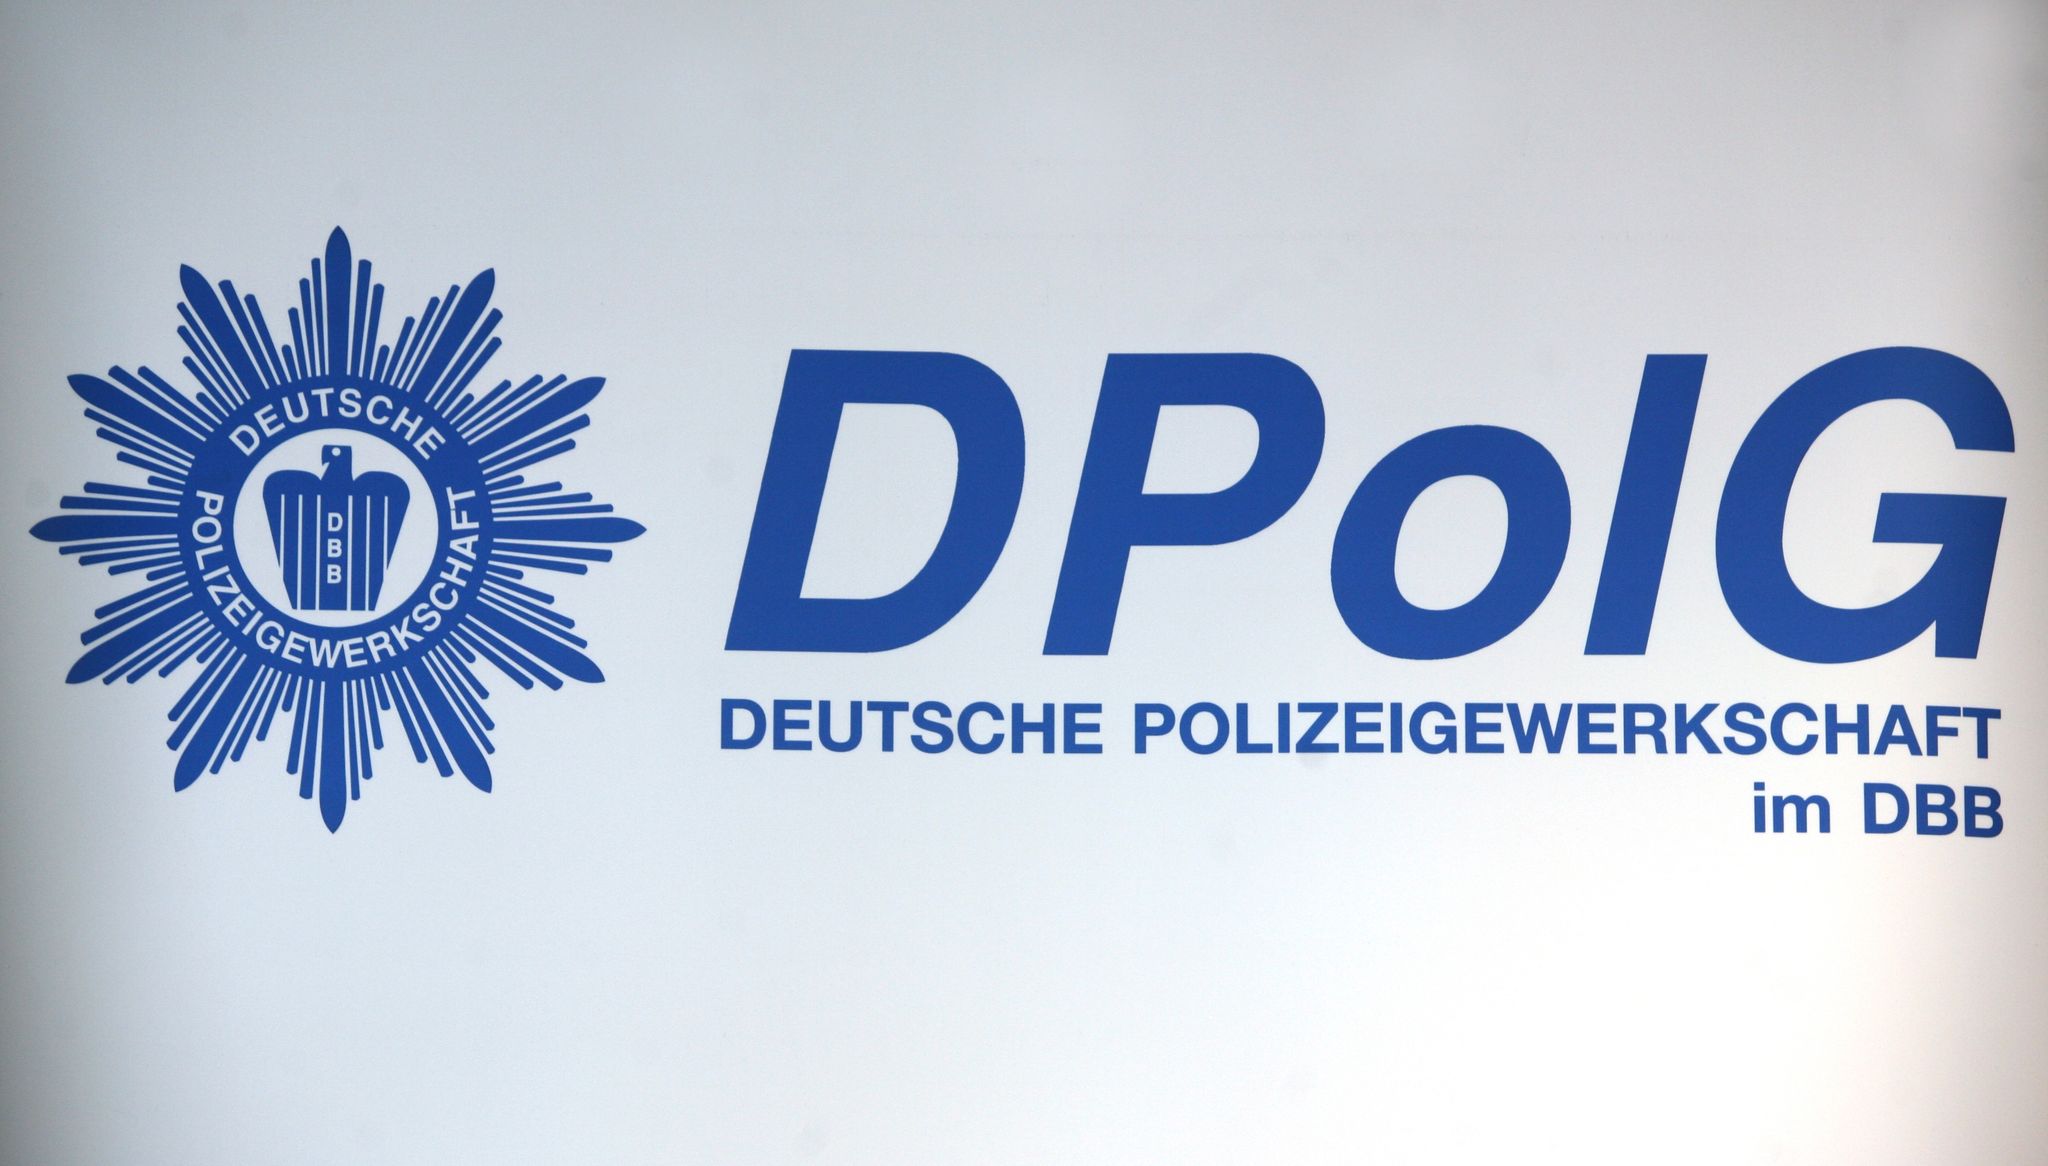 Die Polizeigewerkschaft hat einen Brief an Frank-Walter Steinmeier geschrieben. Der Grund: verfassungsrechtliche Bedenken in Bezug auf den neuen Polizeibeauftragten des Bundes.